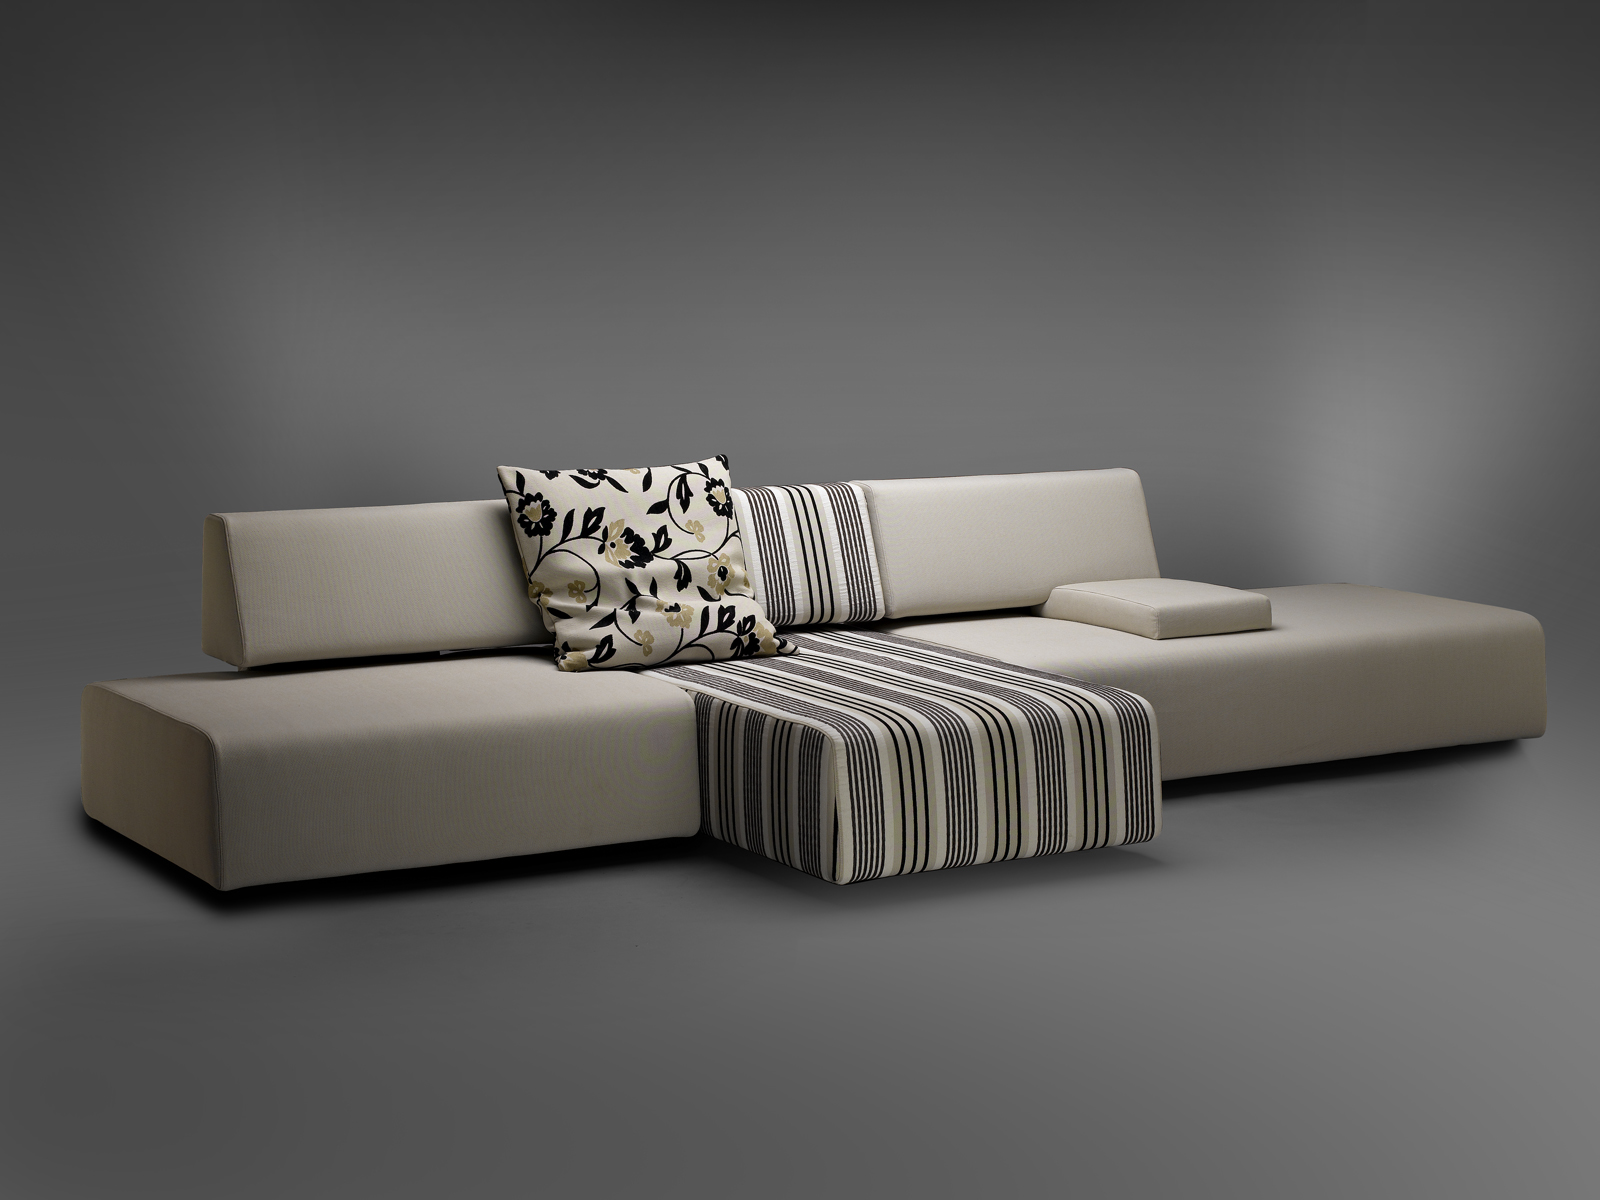 Systemi Sofa